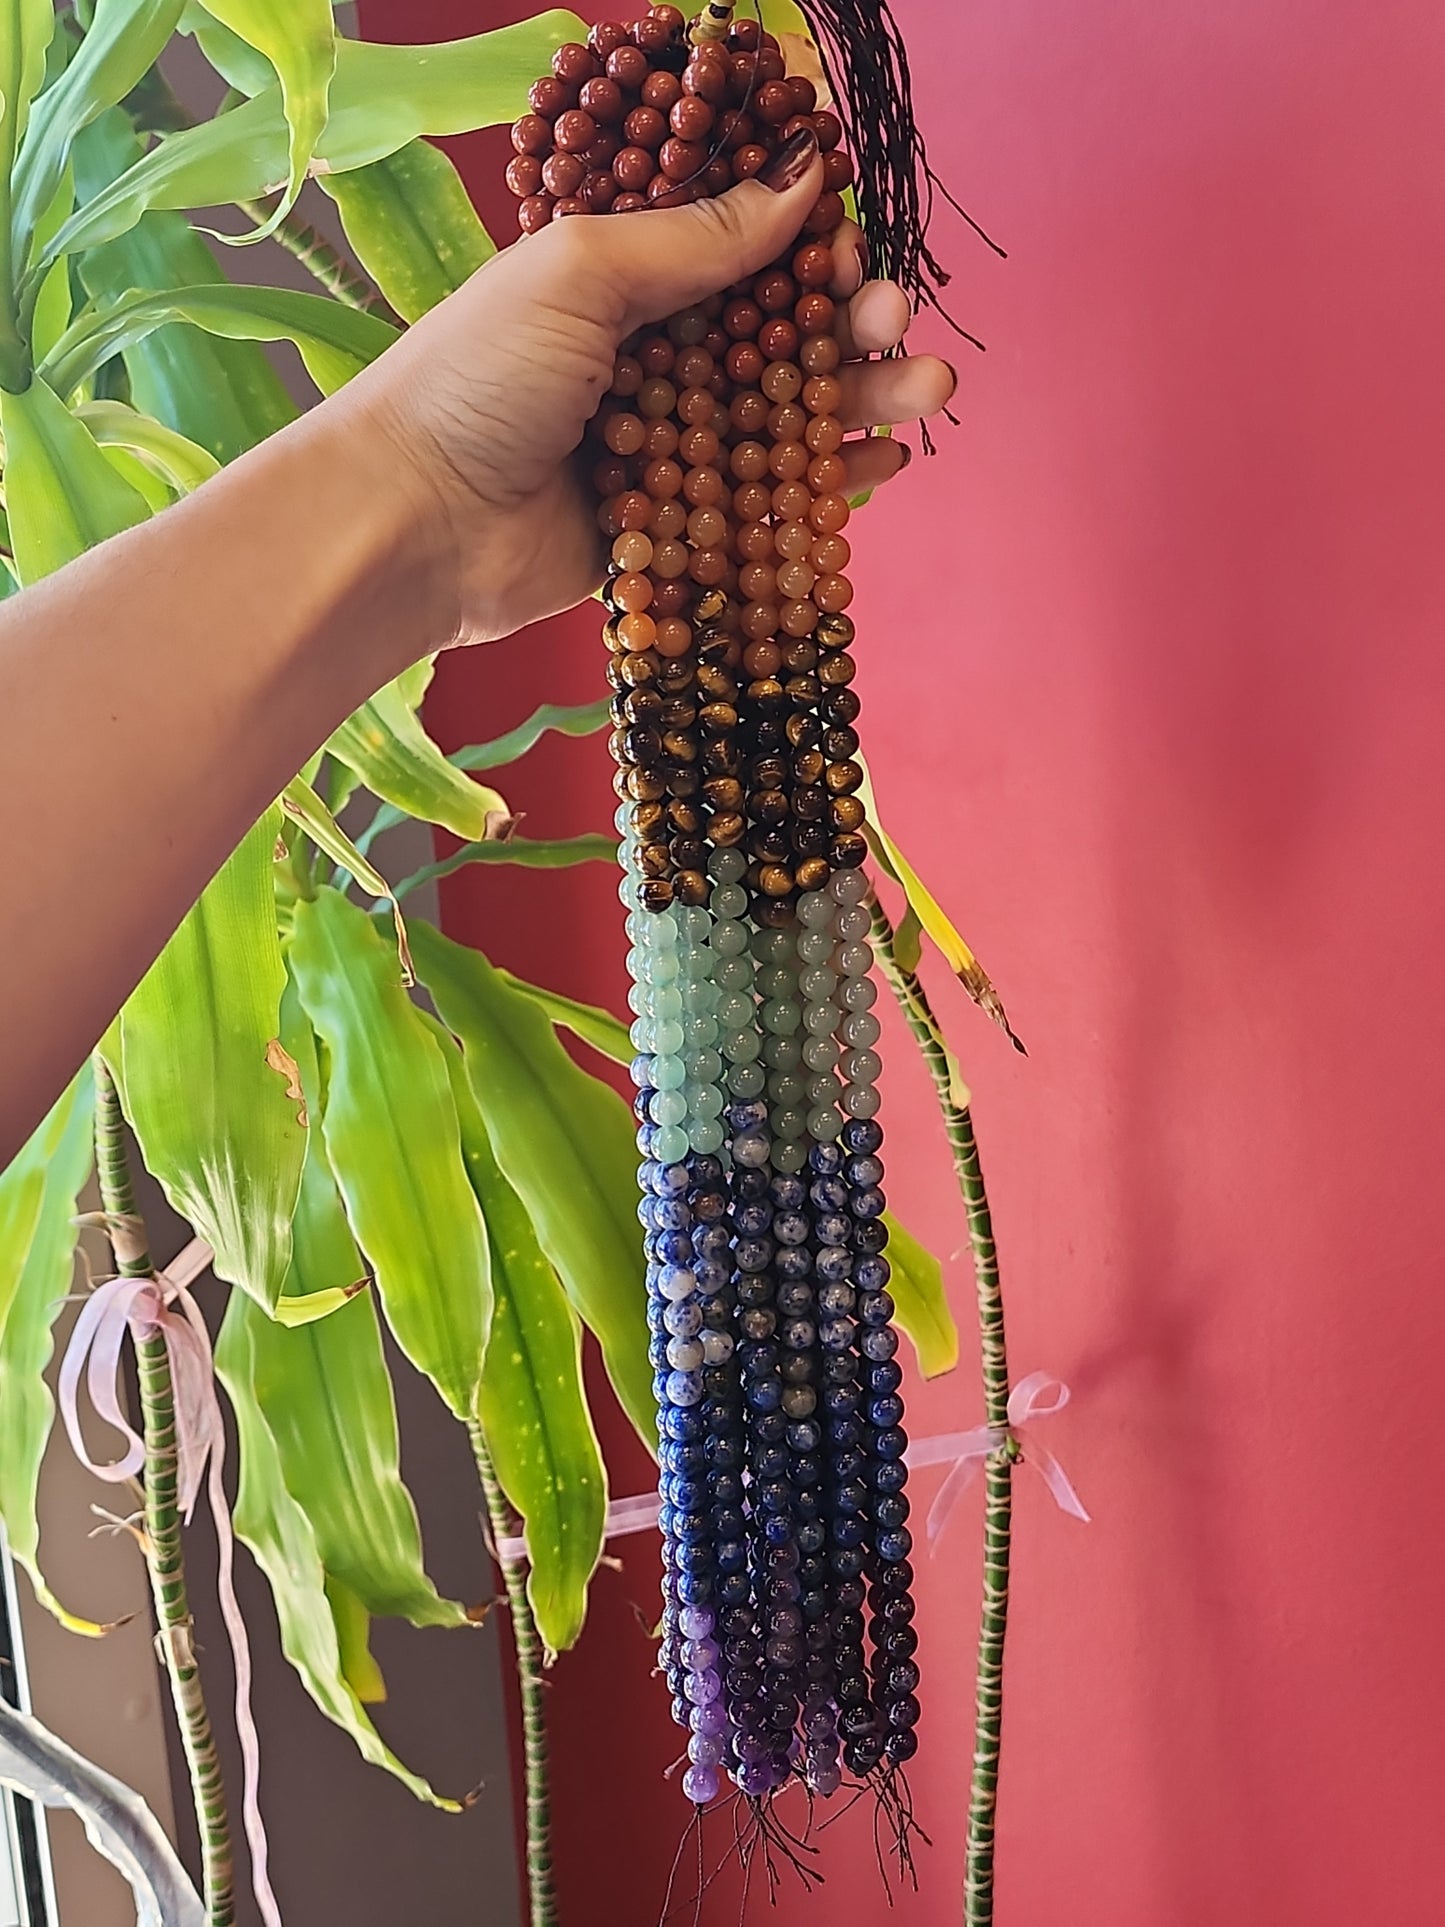 Chakra Beads